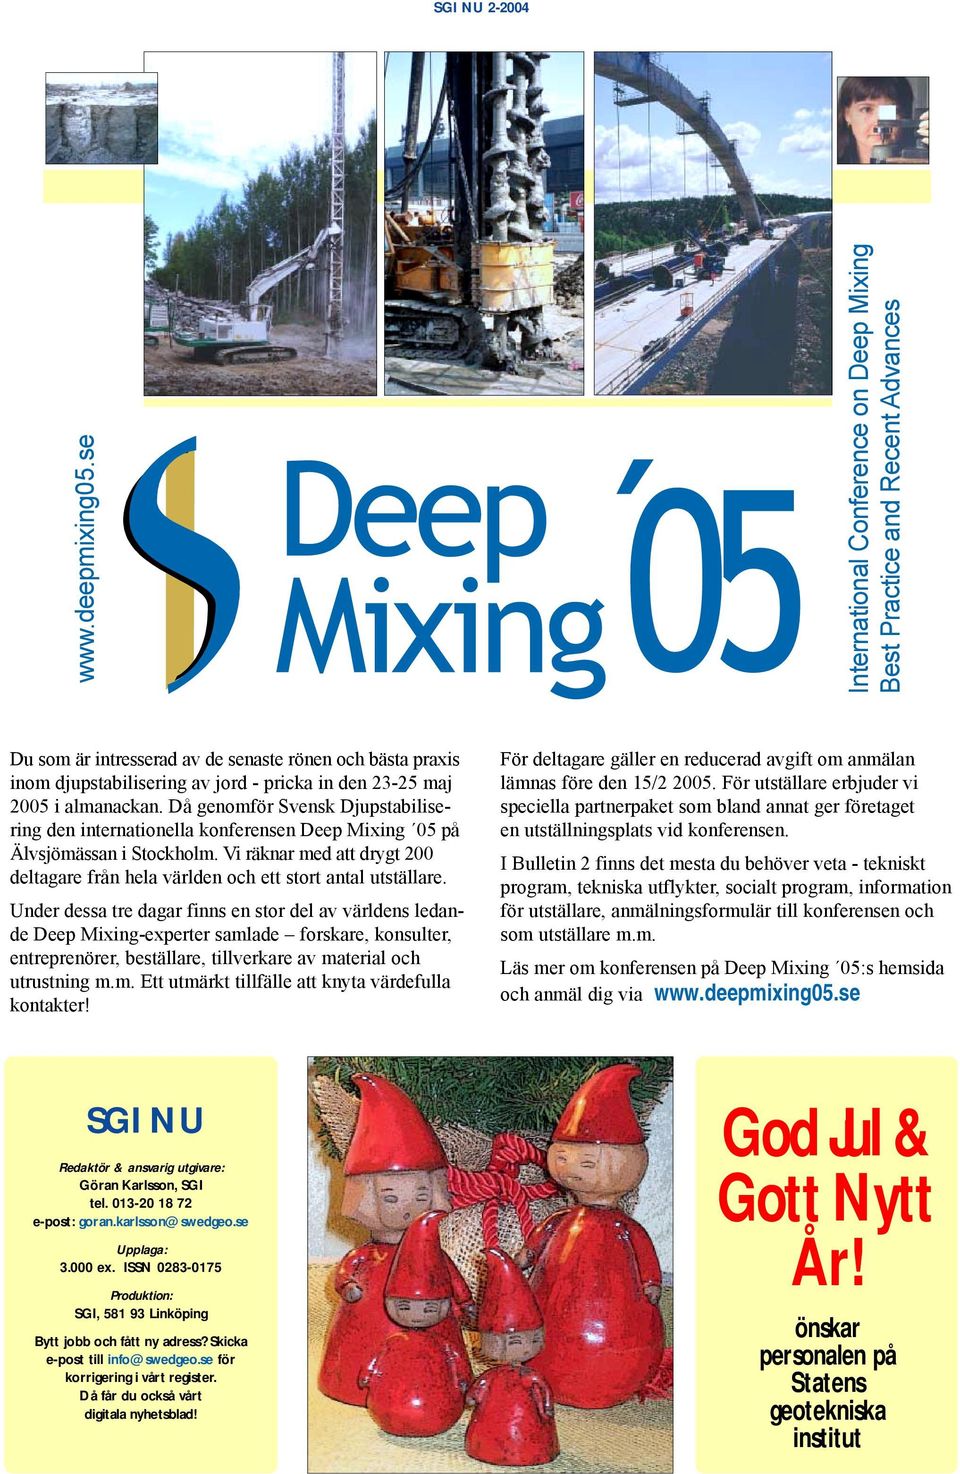 almanackan. Då genomför Svensk Djupstabilisering den internationella konferensen Deep Mixing 05 på Älvsjömässan i Stockholm.